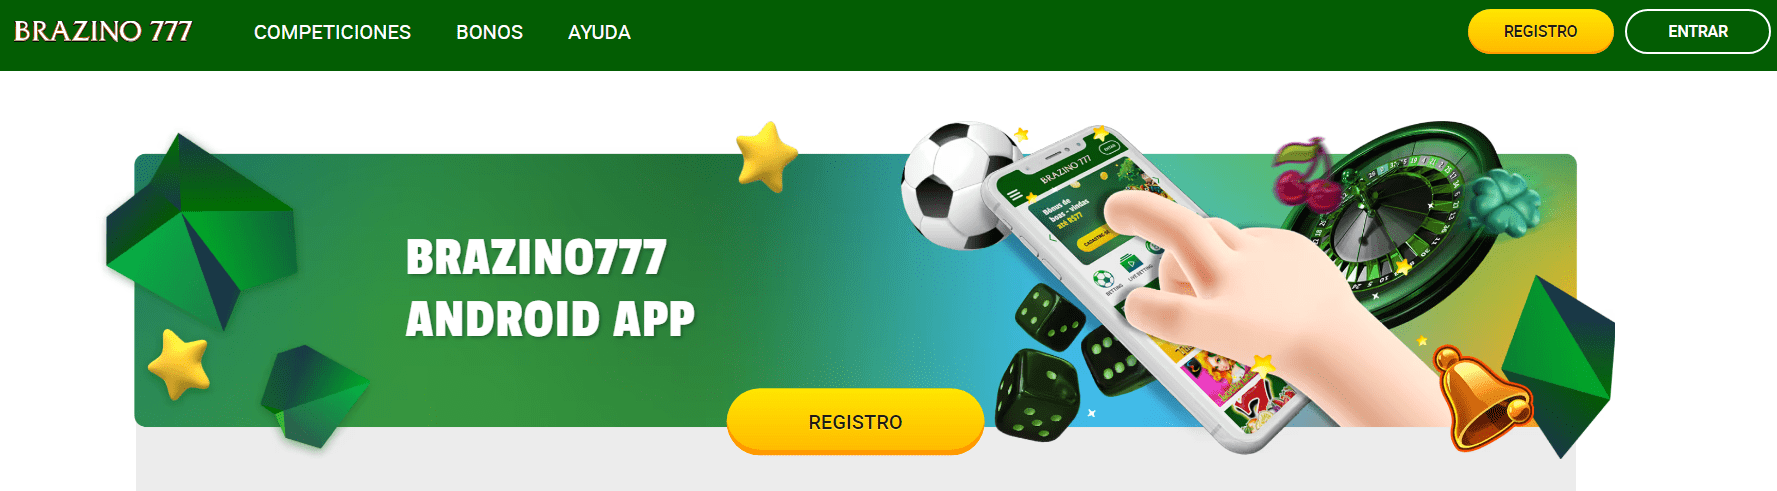 Brazino777 casino mobile app